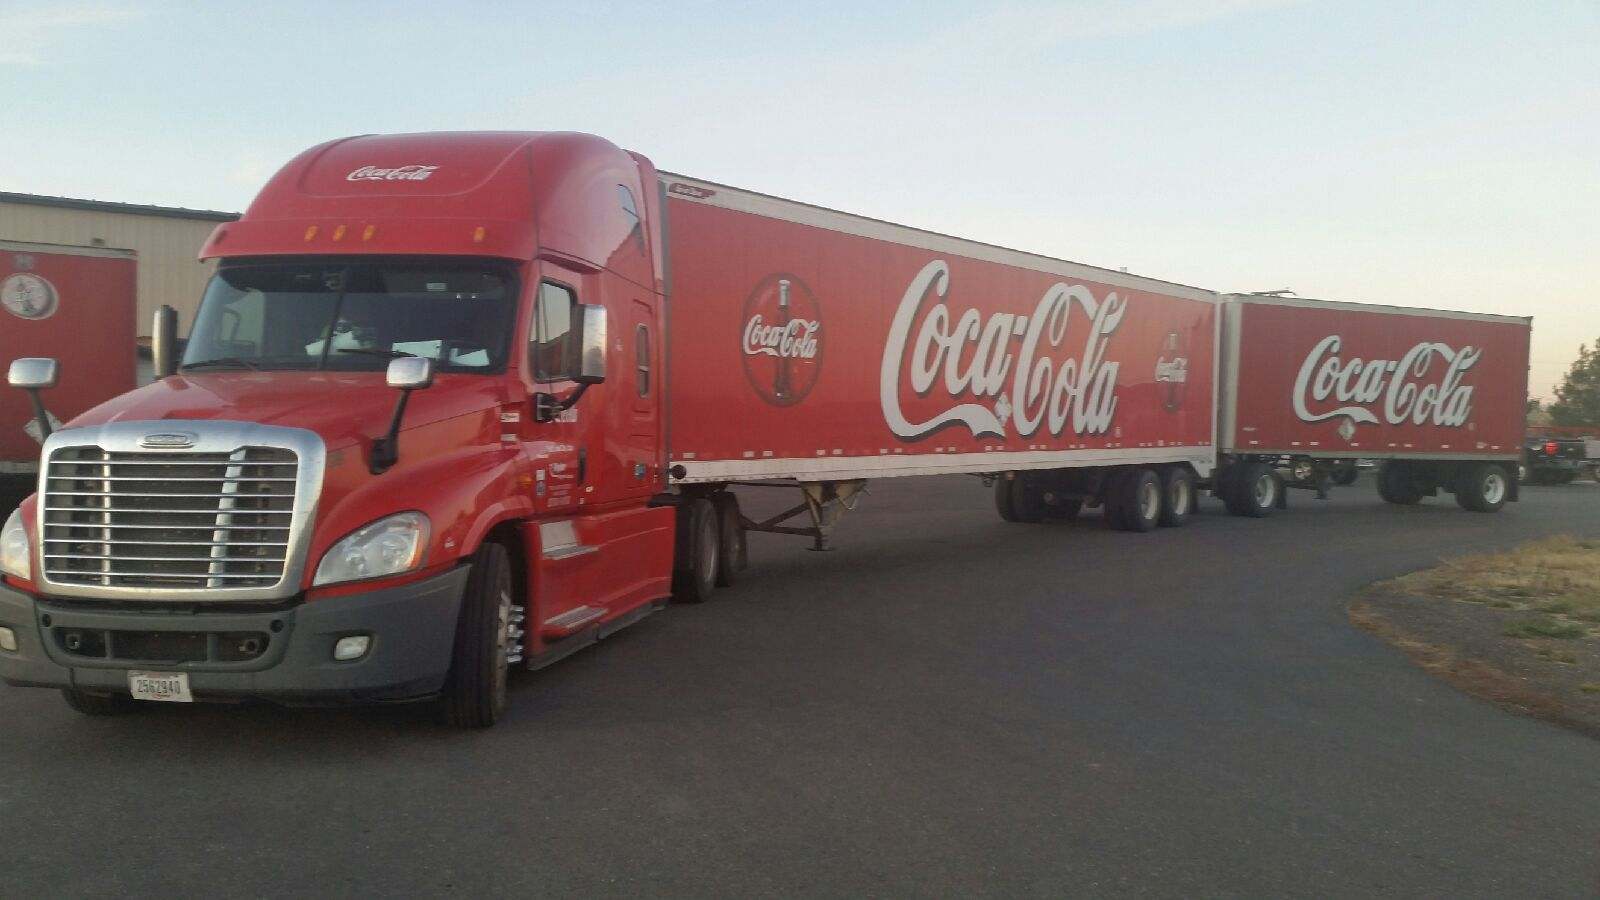 Ryder/Coke Truck, Elko, NV